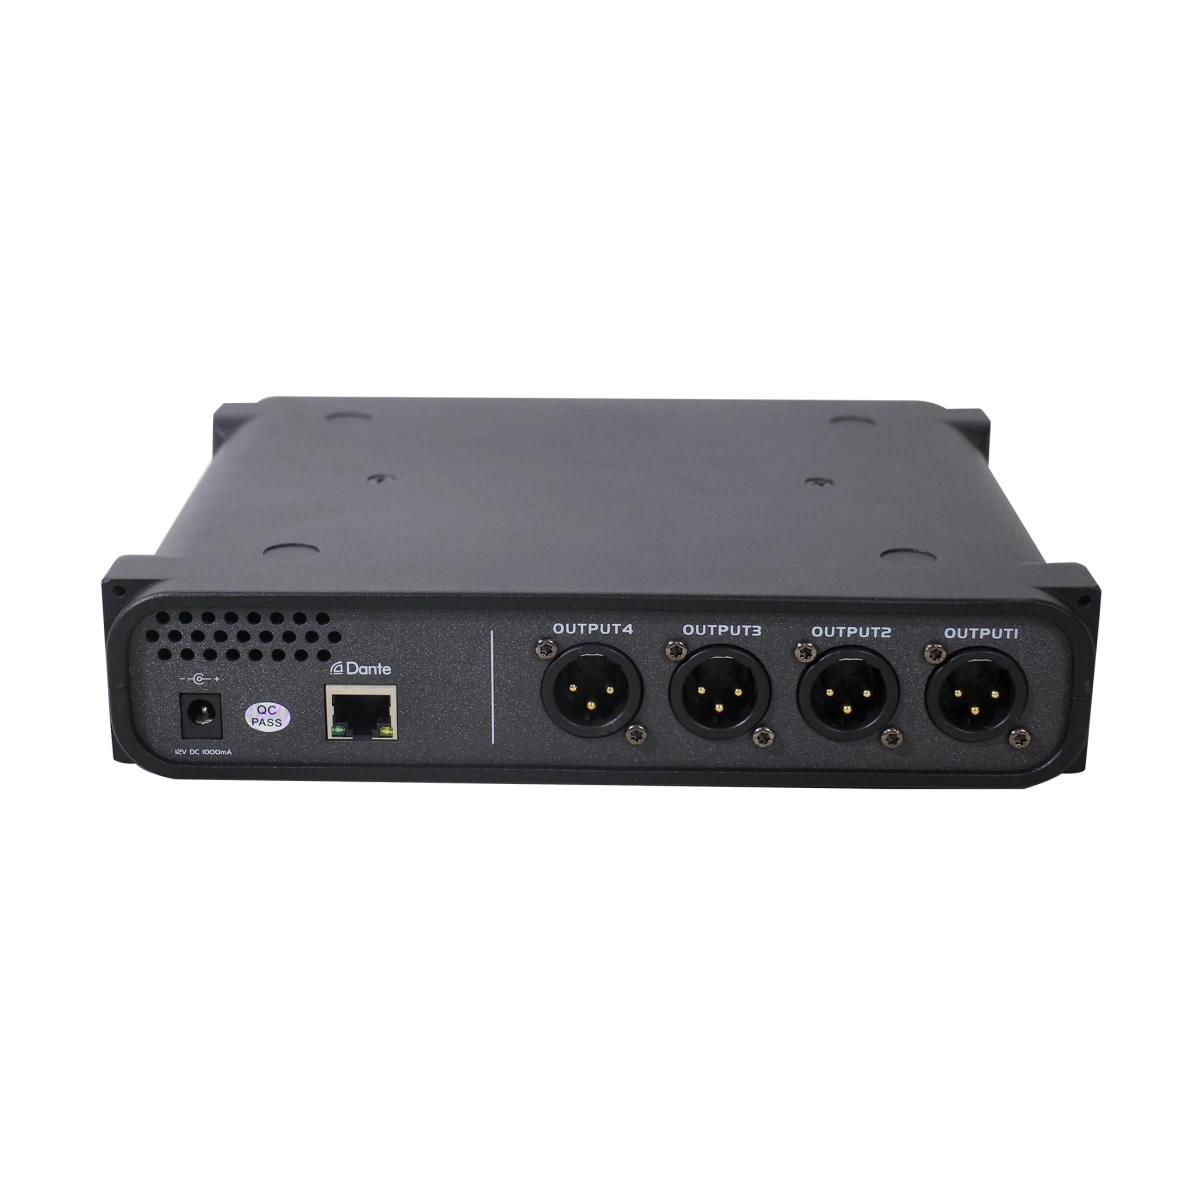 Данте 4 в 4 из передатчика с высоким Ndex Данте питания постоянного тока 4 Pro Audio